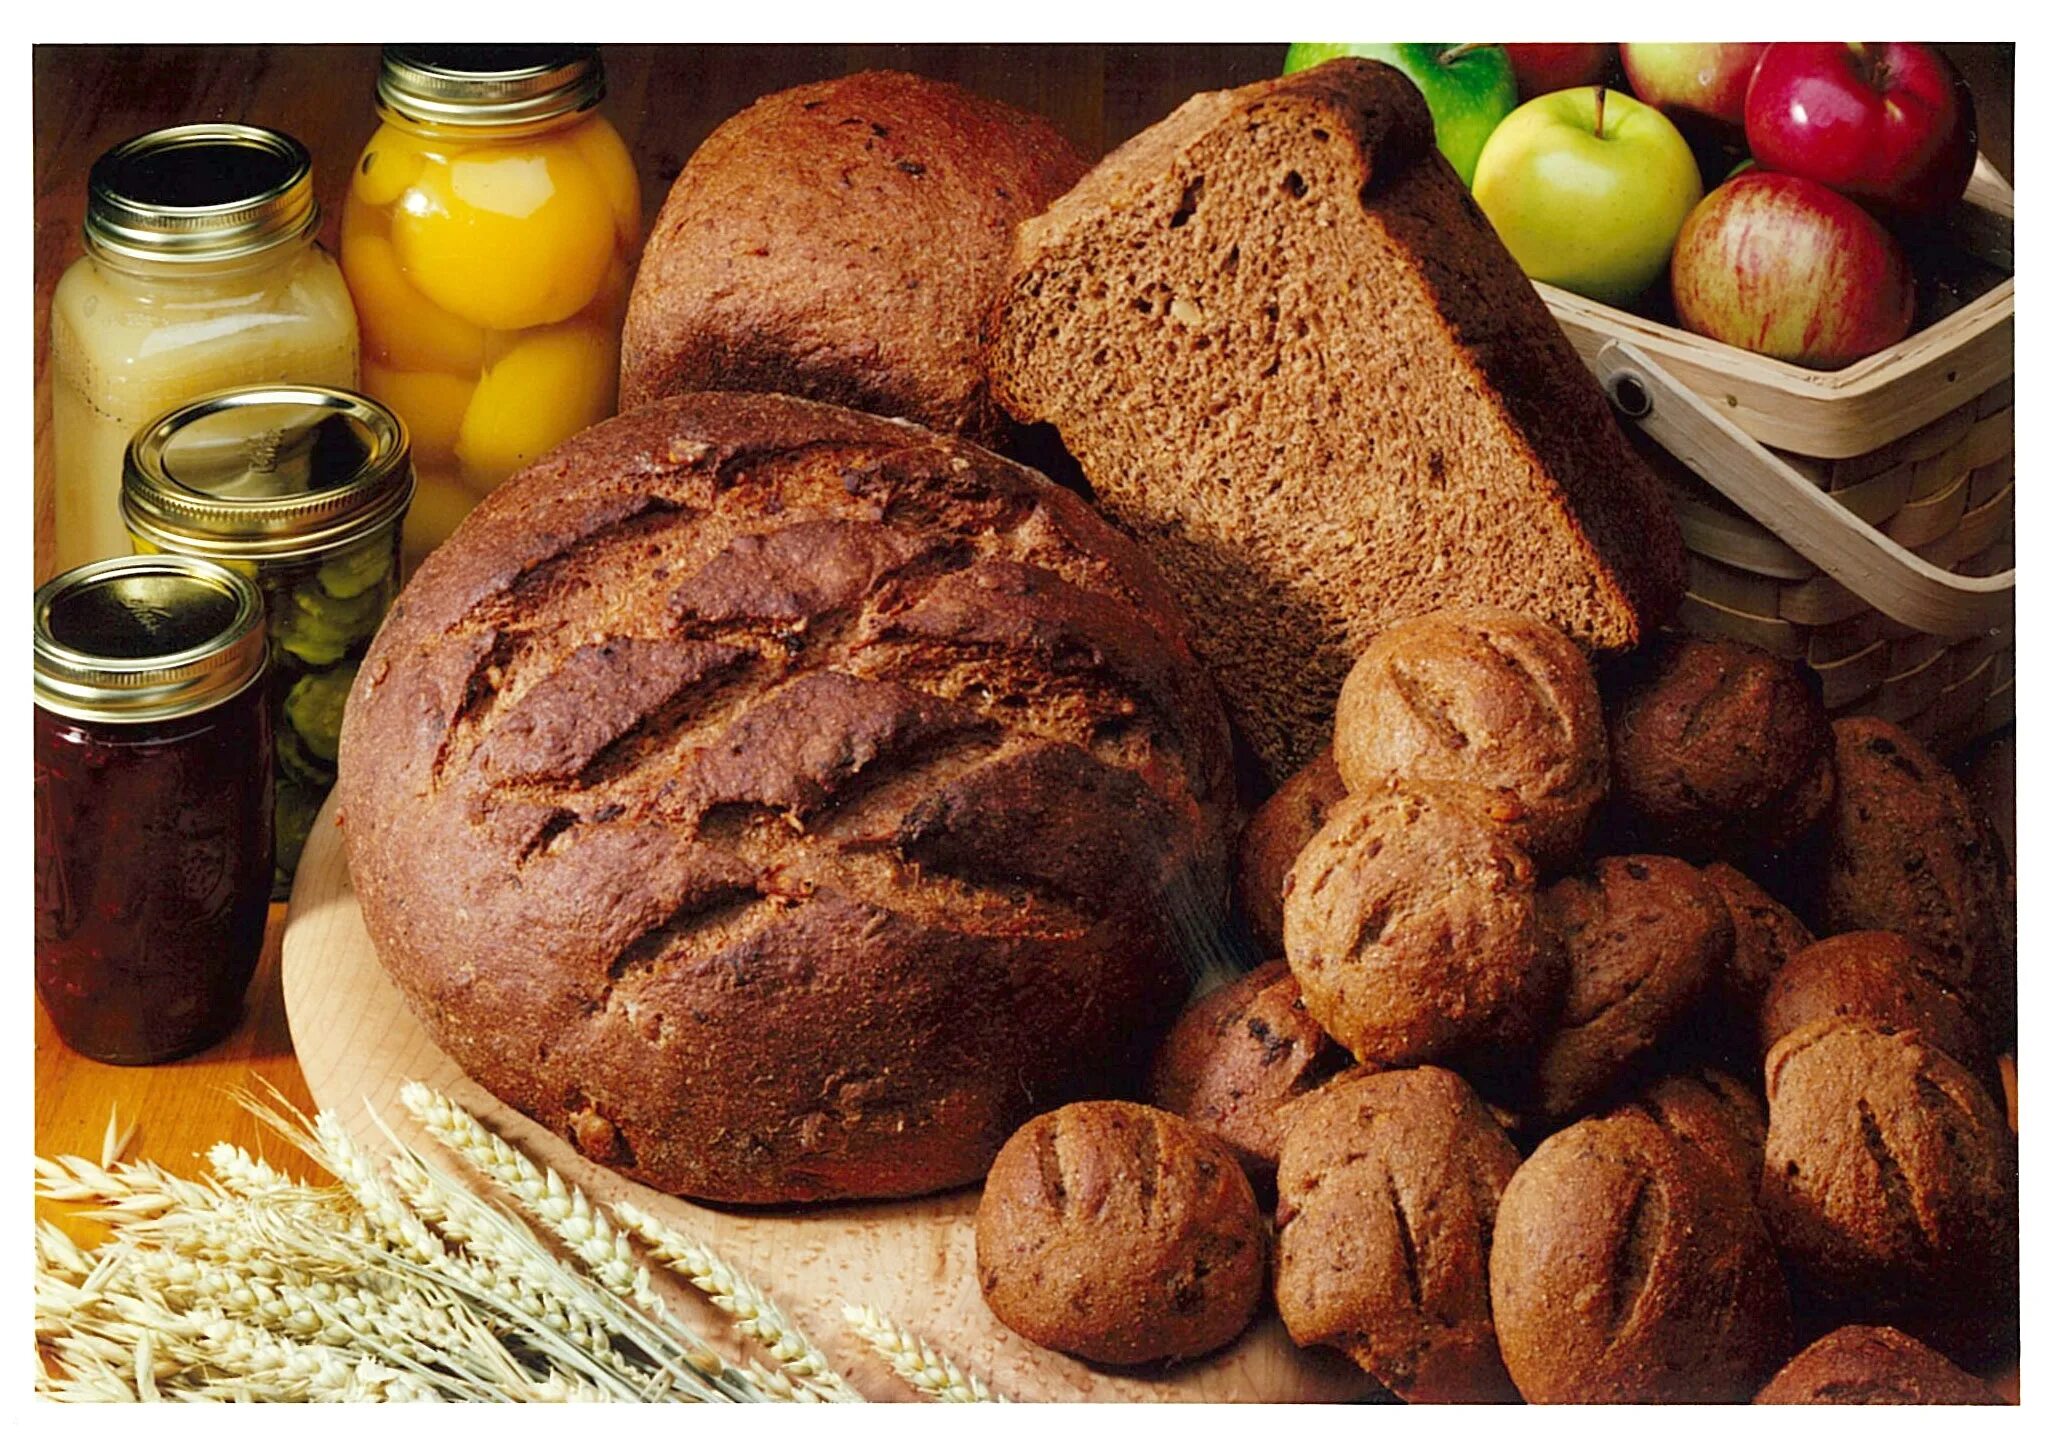 Хлеб 19 века. Хлебобулочные изделия в Европе. Хлеб 18 века. Хлебобулочные изделия в 18 веке. Пикник дайте хлеба